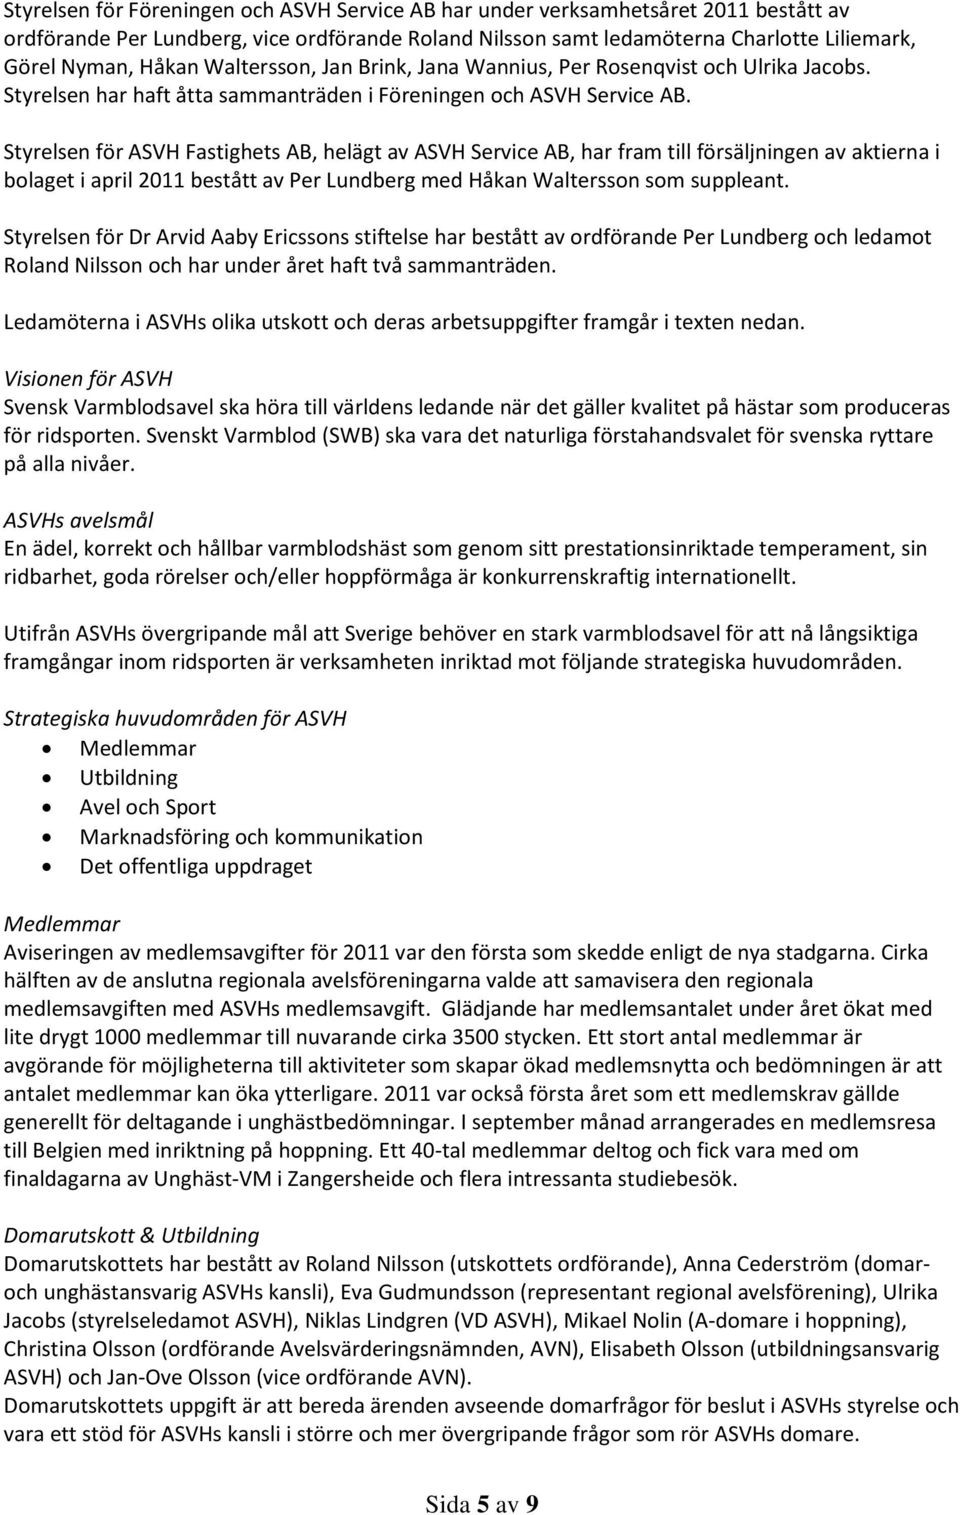 Styrelsen för ASVH Fastighets AB, helägt av ASVH Service AB, har fram till försäljningen av aktierna i bolaget i april 2011 bestått av Per Lundberg med Håkan Waltersson som suppleant.